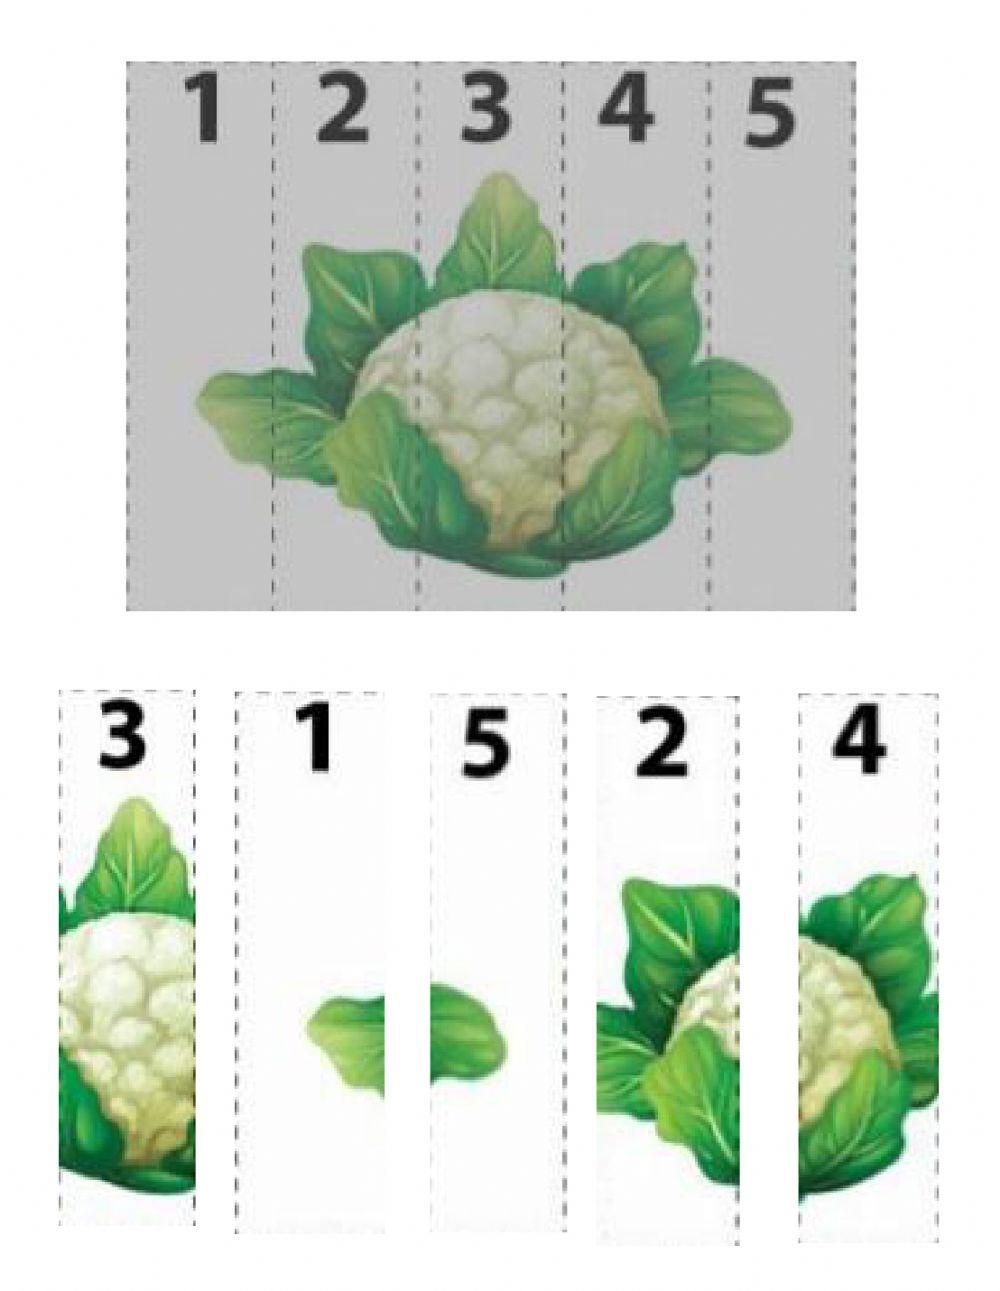 Frutas y verduras frescas - ePuzzle foto puzzle